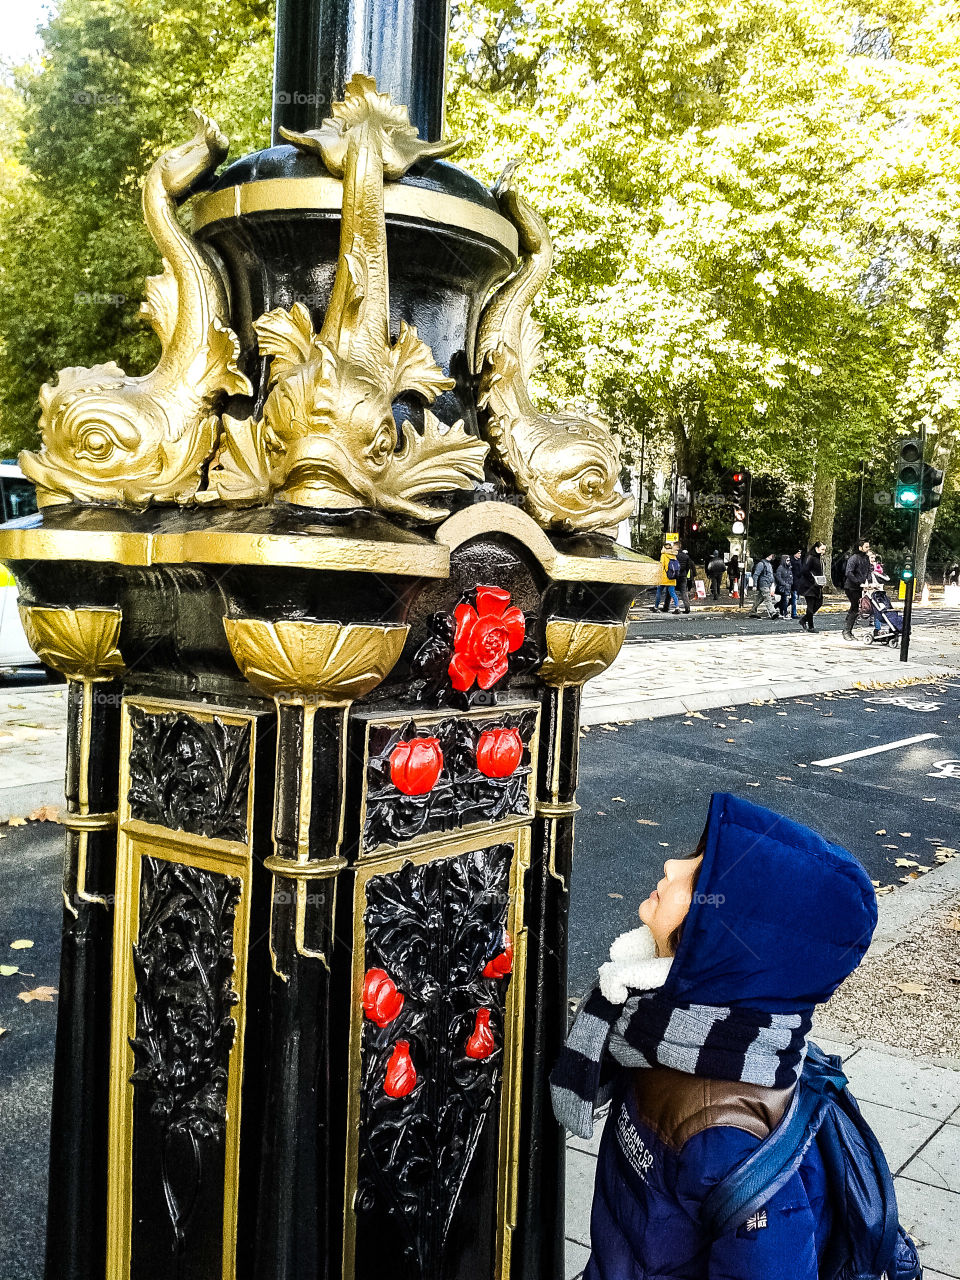 Una elegante farola en negro, rojo y dorado del paseo de Victoria de Londres  en la imagen brilla bajo una leve luz de sol invernal . El niño la mira atónito encandilado por su belleza y se olvida del viento que azota su cara tapada con capucha